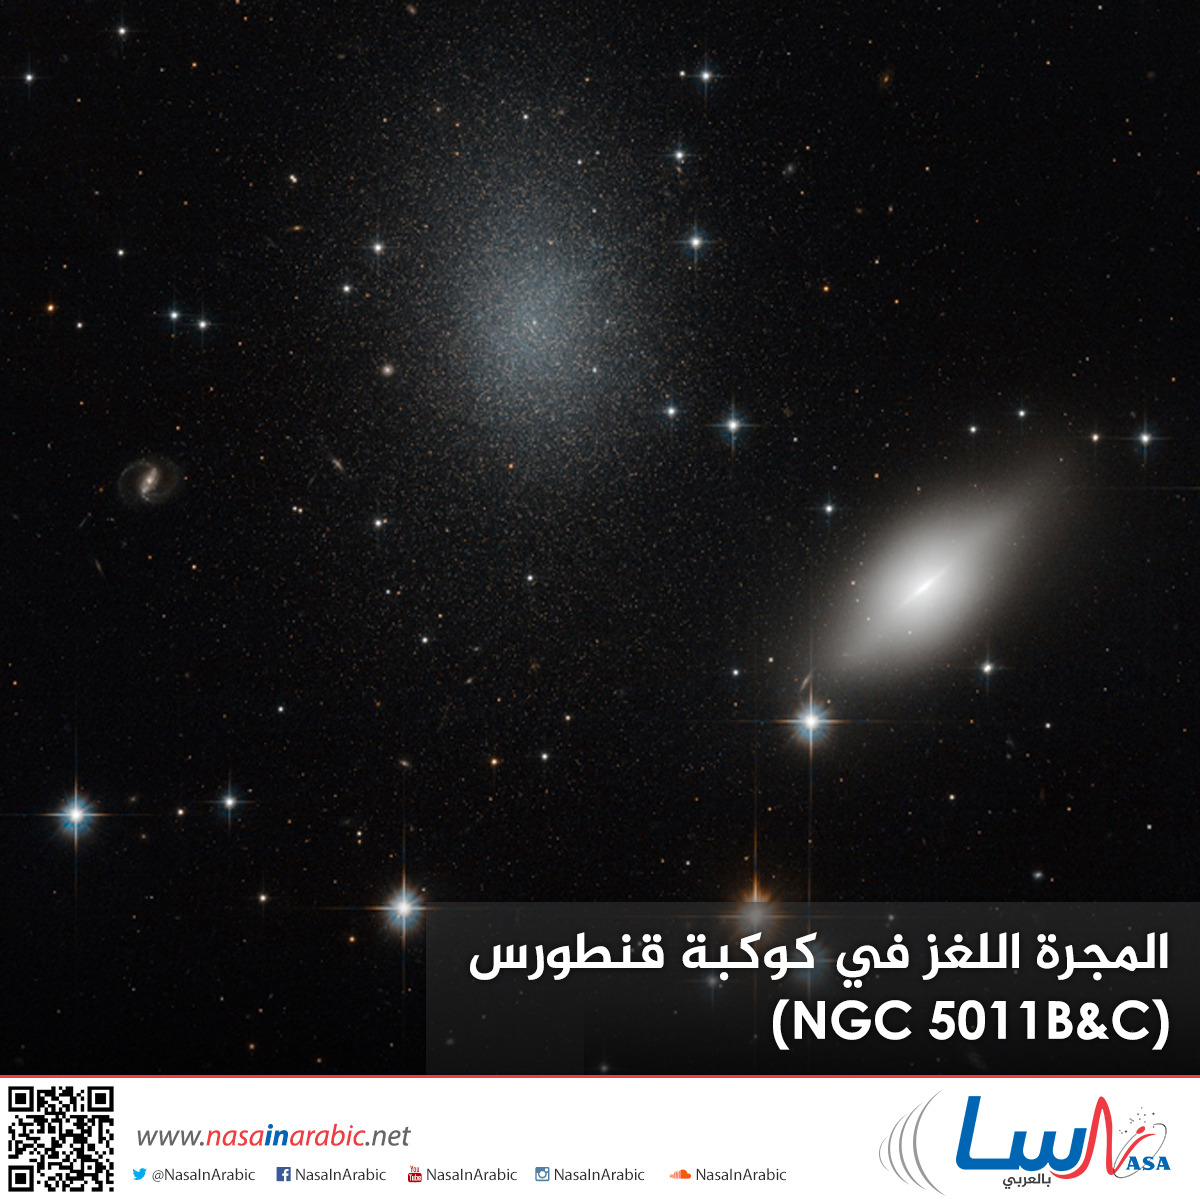 المجرة اللغز في كوكبة قنطورس (NGC 5011B&C)